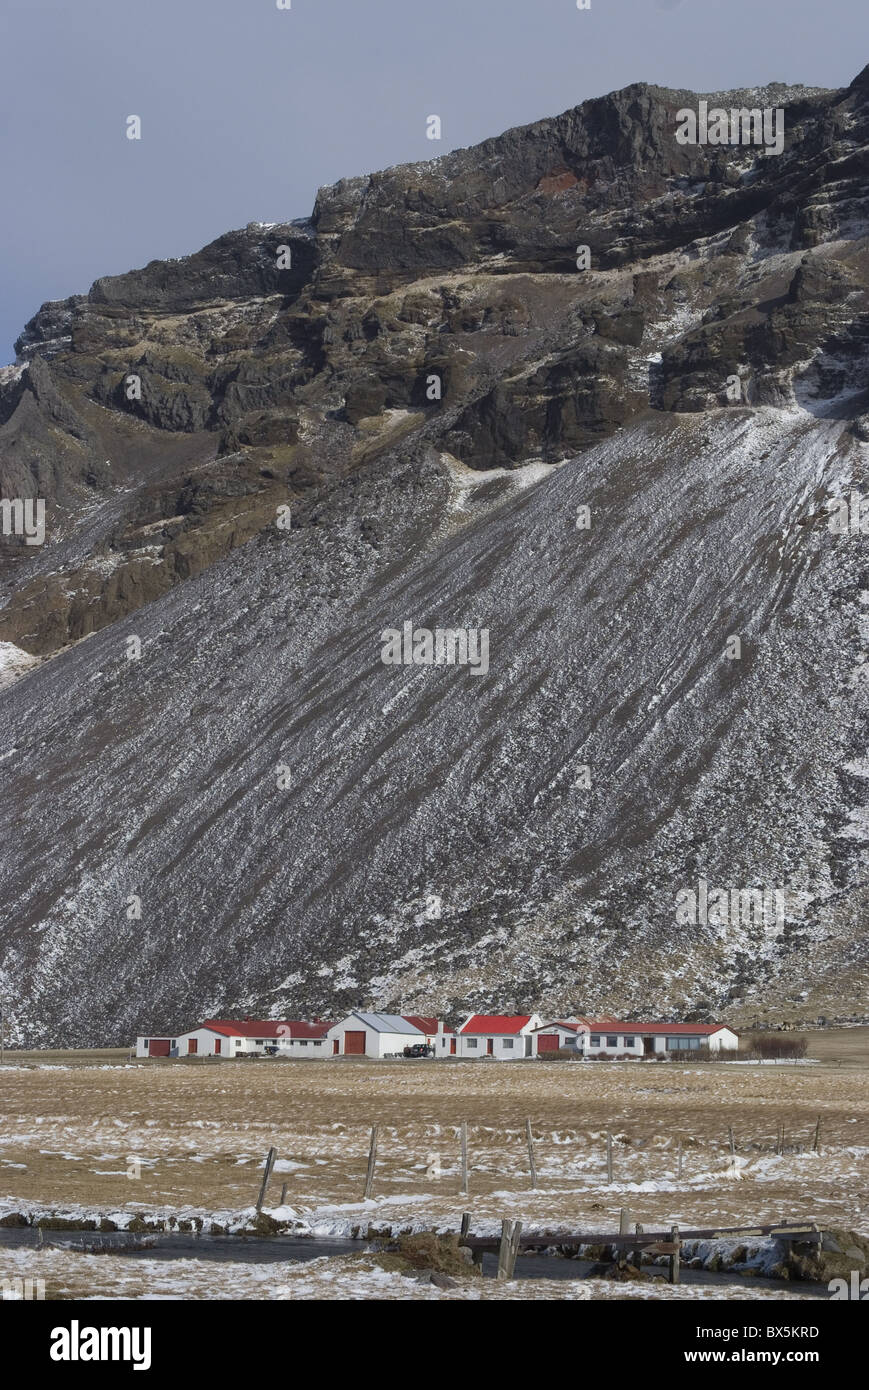 Typischer Bauernhof in einem Standort voraussichtlich bei Vulkanausbrüchen, Skogafoss, South Island, Island evakuiert werden Stockfoto